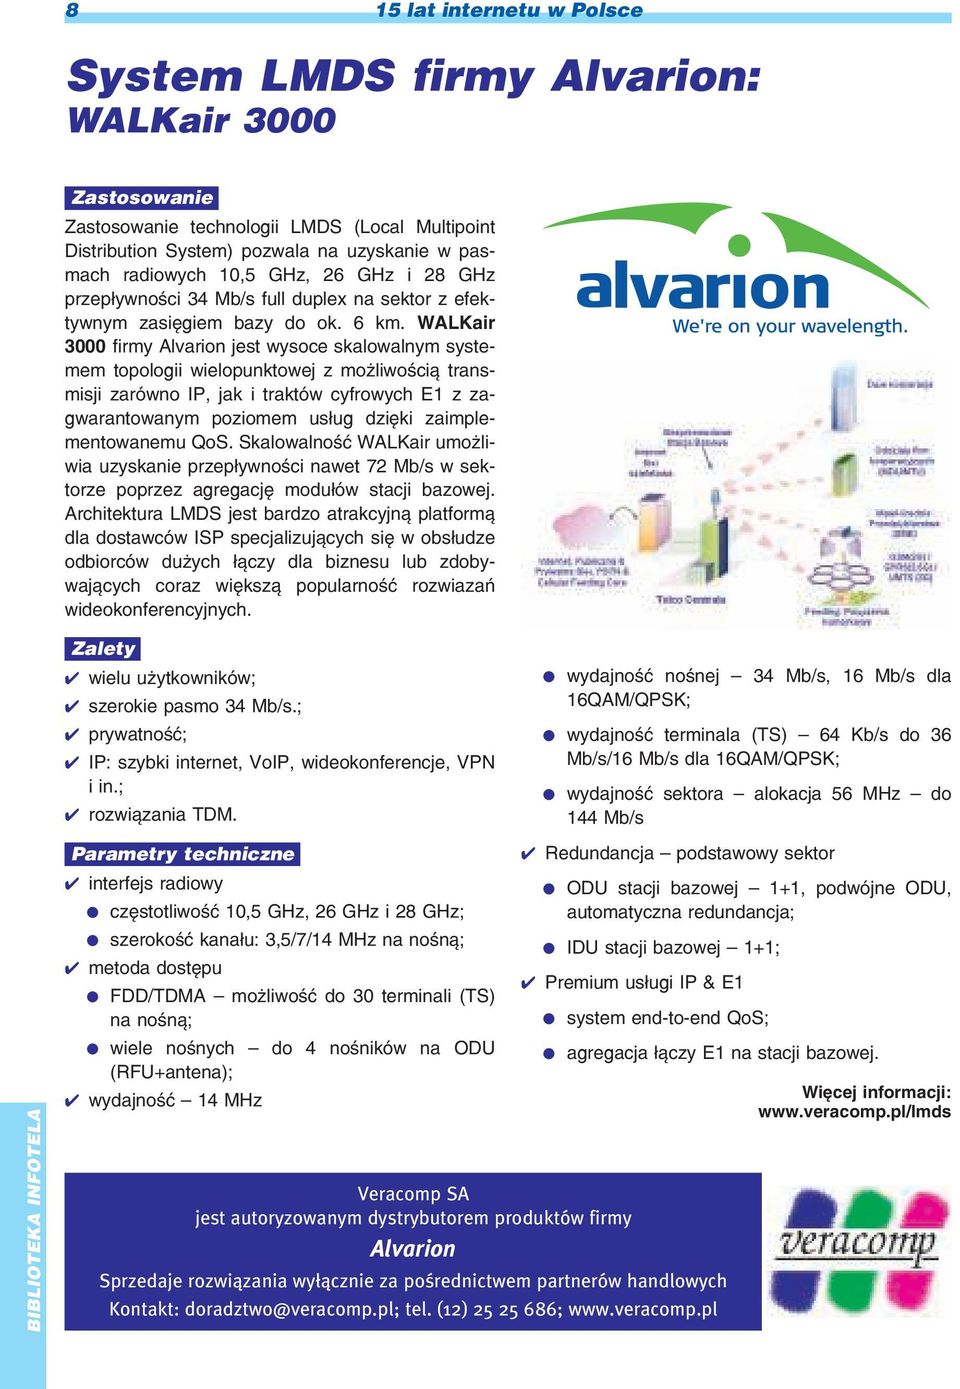 WALKair 3000 firmy Alvarion jest wysoce skalowalnym systemem topologii wielopunktowej z mo liwoœci¹ transmisji zarówno IP, jak i traktów cyfrowych E1 z zagwarantowanym poziomem us³ug dziêki